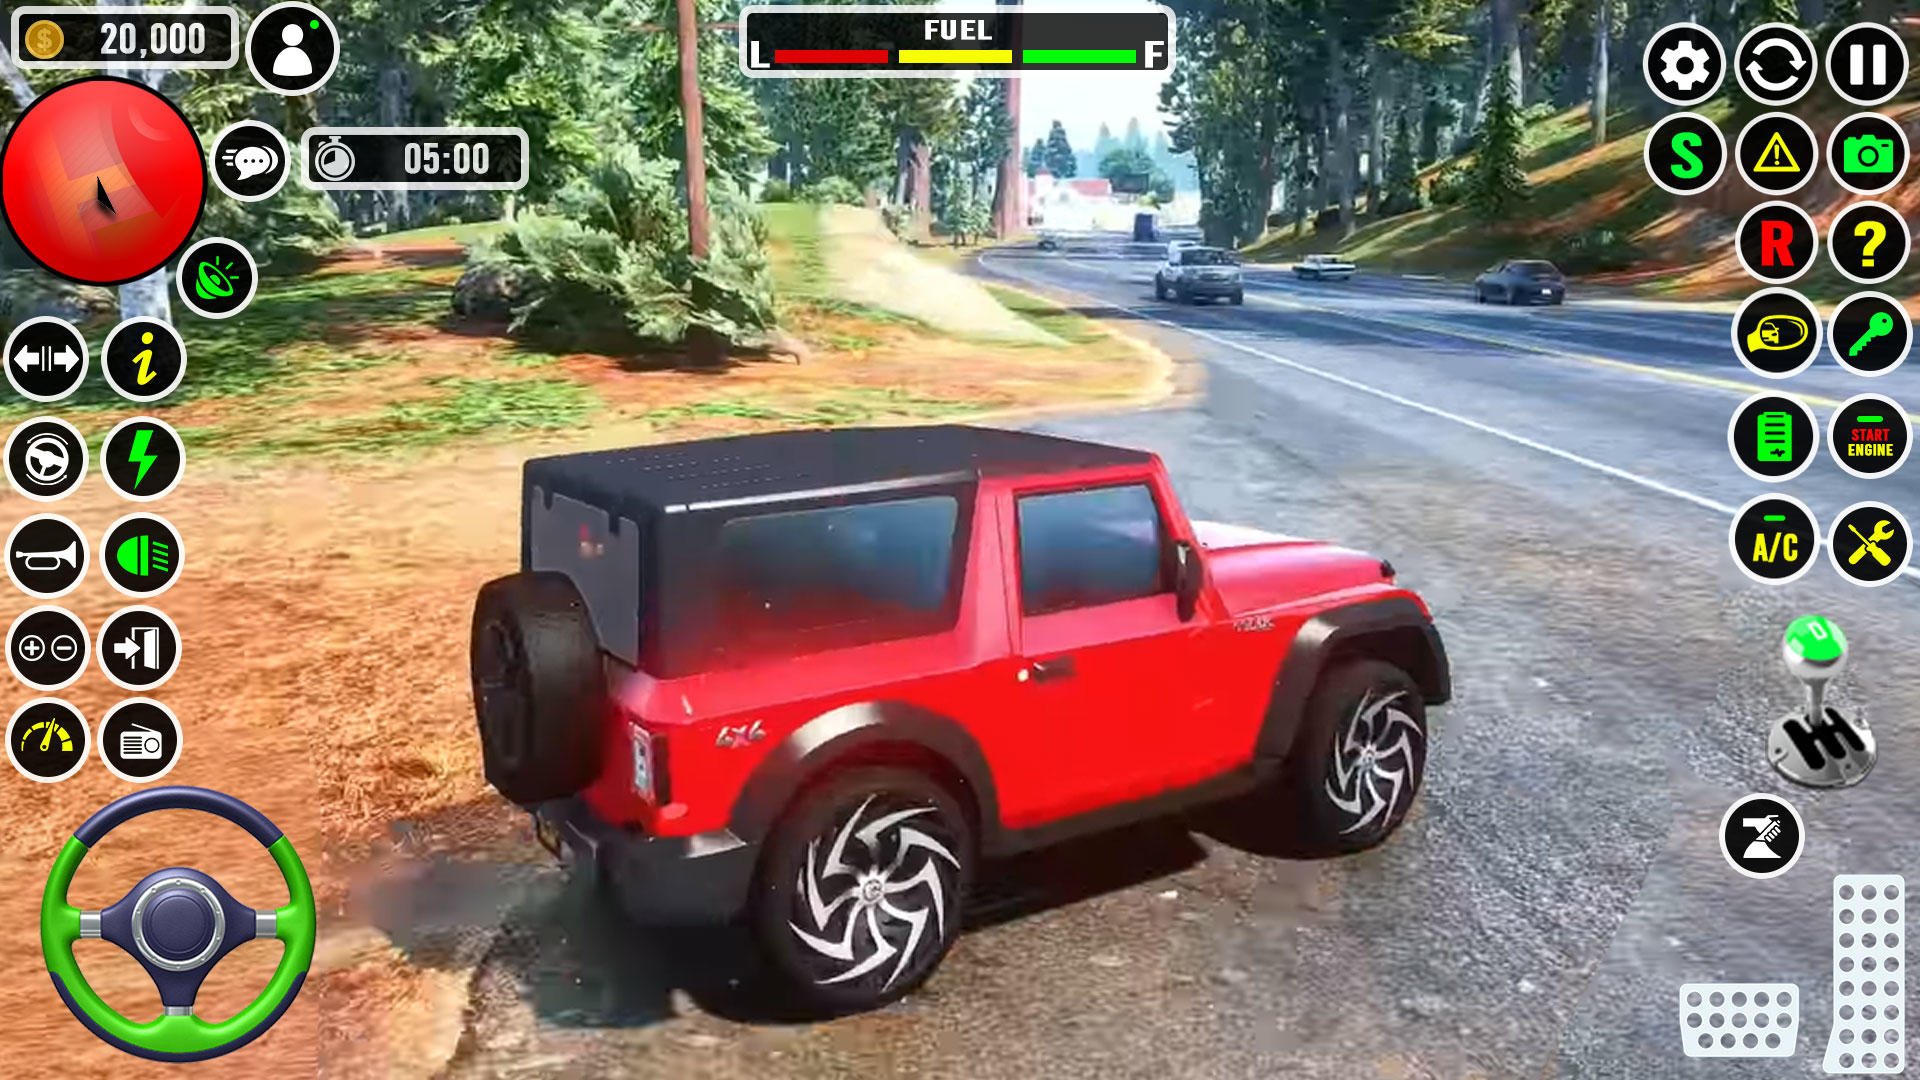 Screenshot 1 of Jeep Game Driving Simulator 0.1